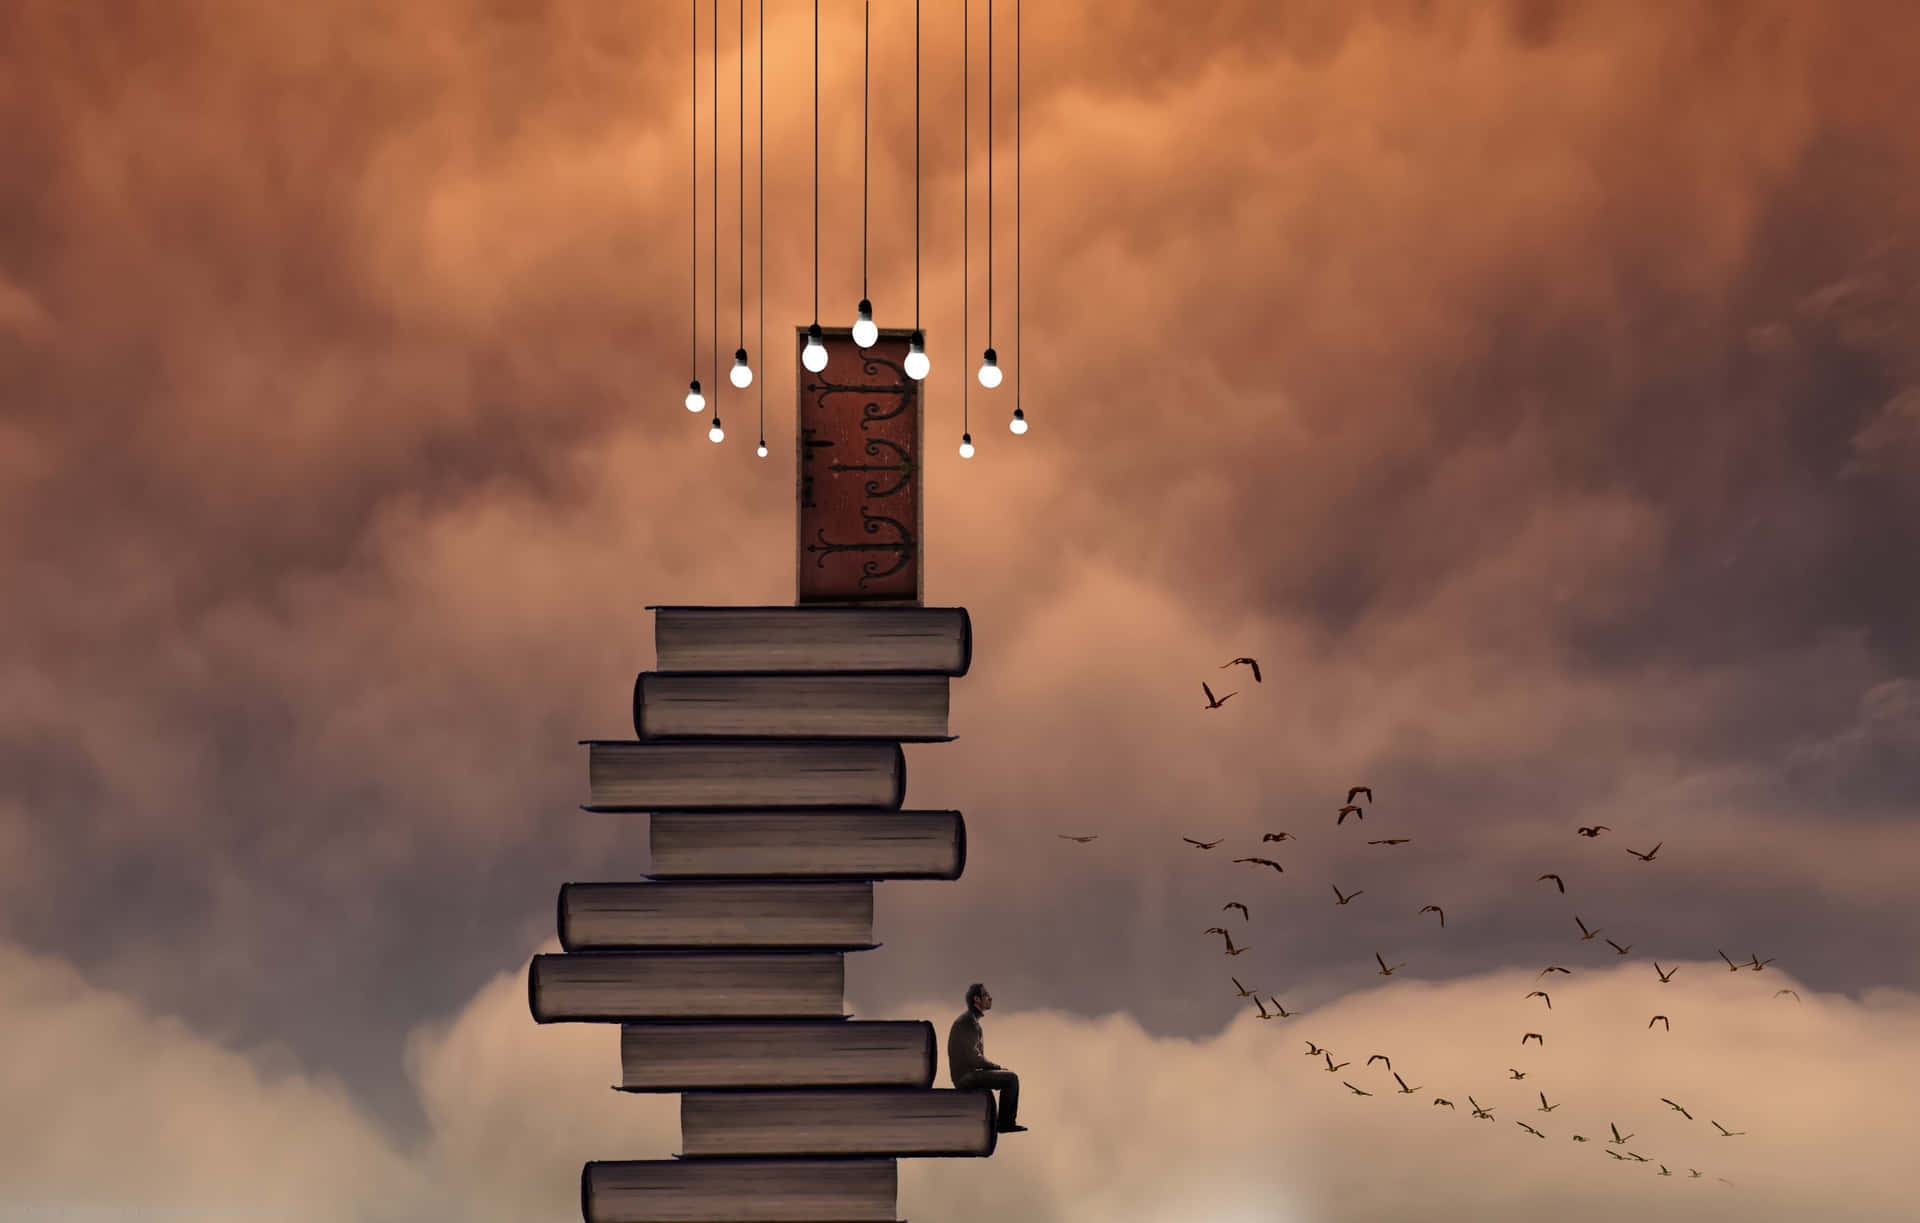 En stak bøger med en person stående på toppen af dem Wallpaper